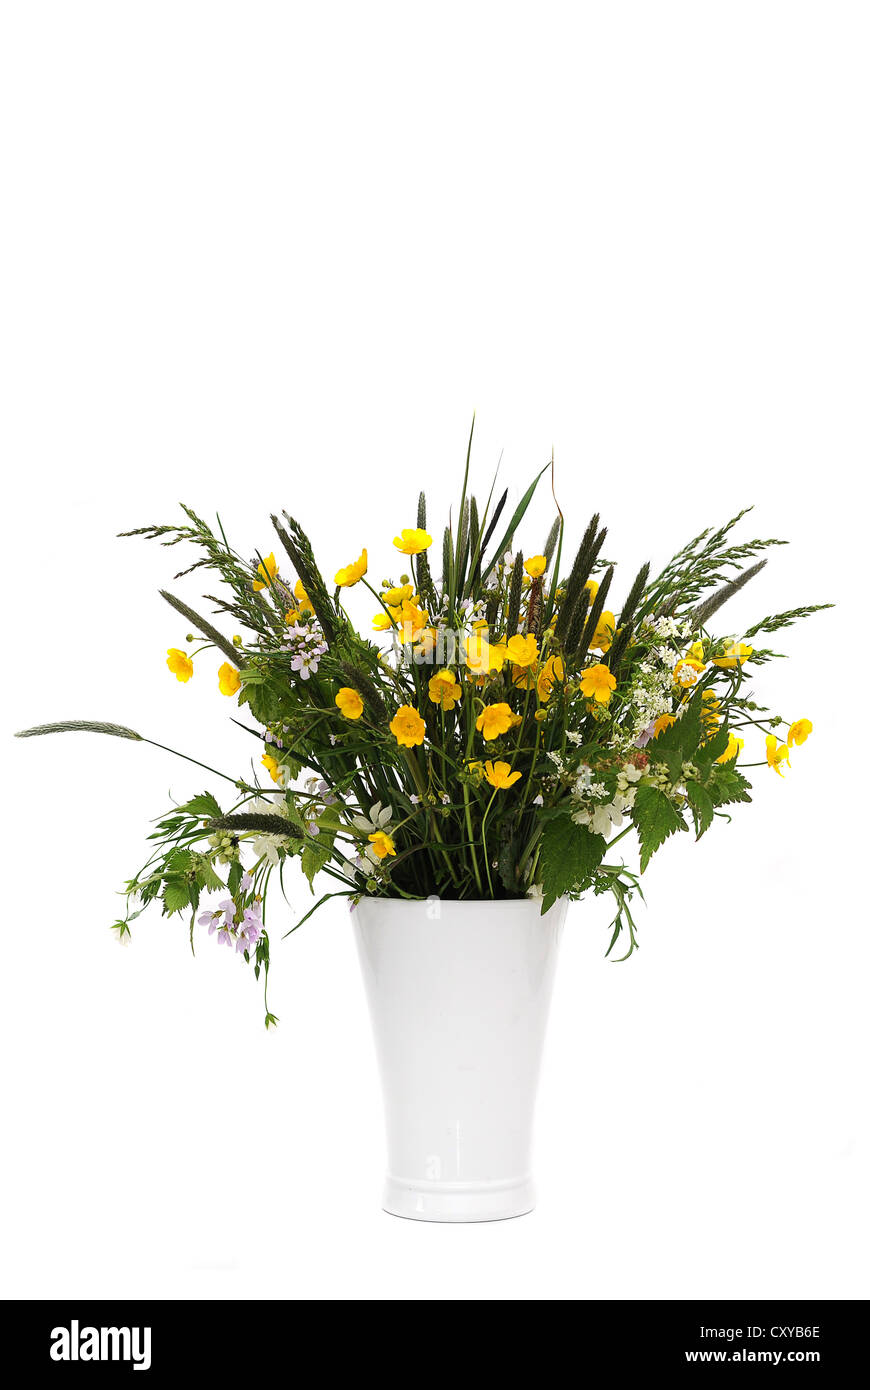 Bouquet de fleurs des champs avec des renoncules (Ranunculus acris) dans un vase blanc Banque D'Images